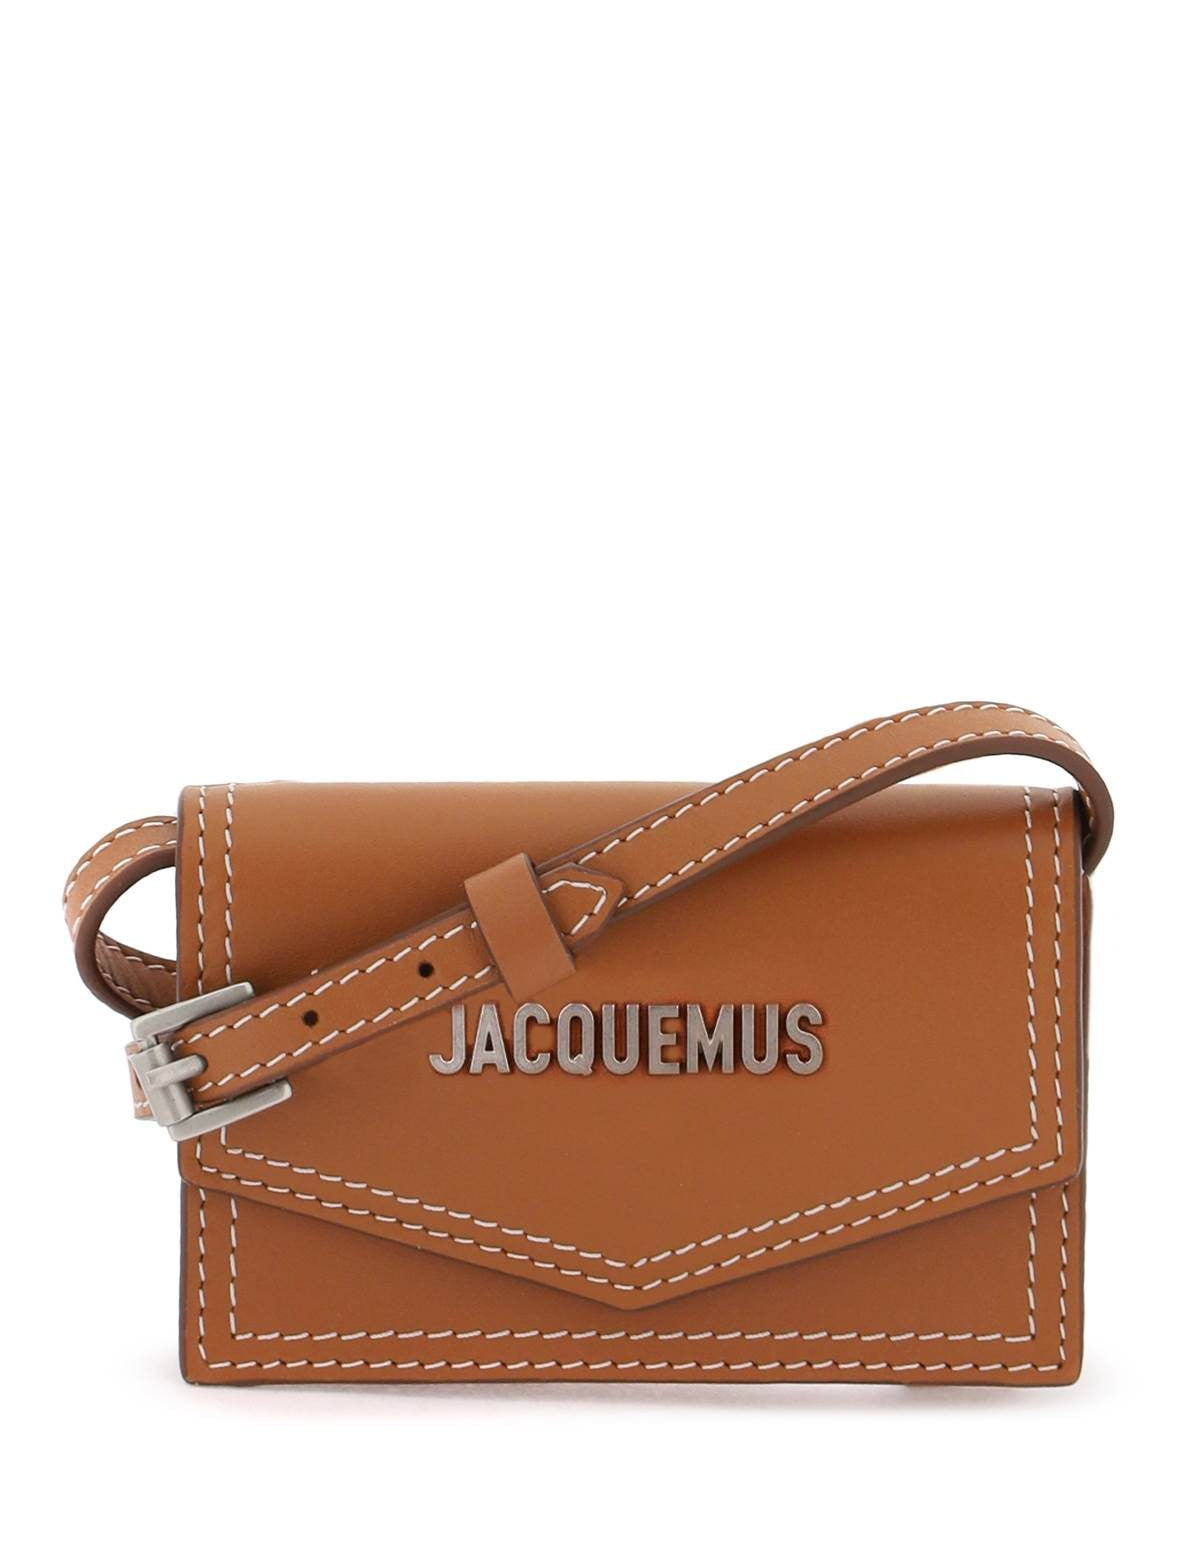 jacquemus-le-porte-azur-crossbody-cardholder.jpg